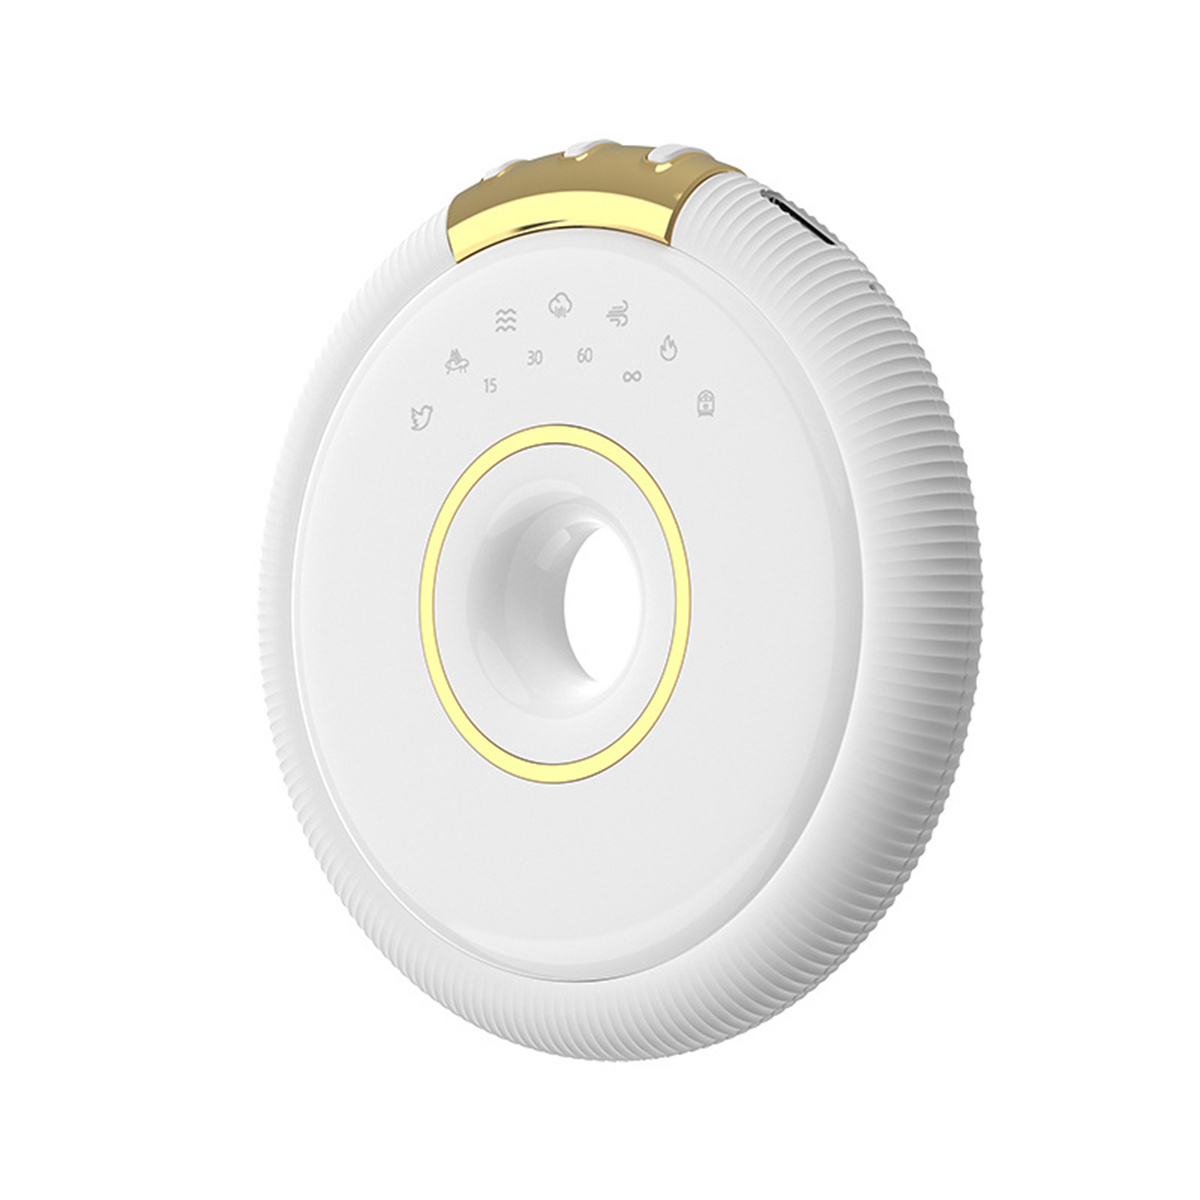 Knochenleitung SYNTEK Schlafhilfe Weißes Lautsprecher Lautsprecher, Rauschen Weiß Bluetooth weiß Lautsprecher Bluetooth Mini